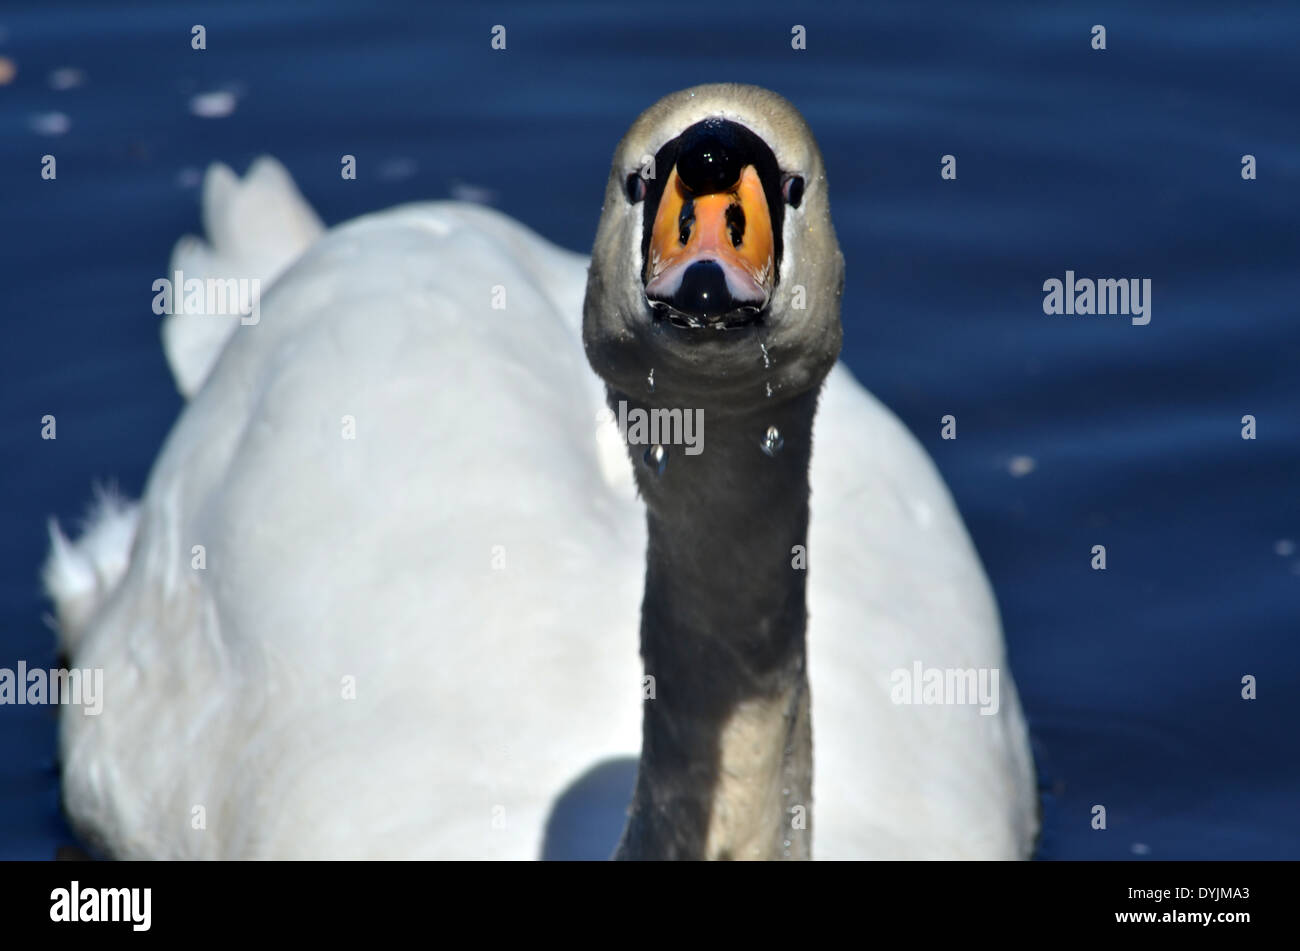 Usted me está mirando? Ángulo inusual para tomar una fotografía de Swan, interesante. Foto de stock